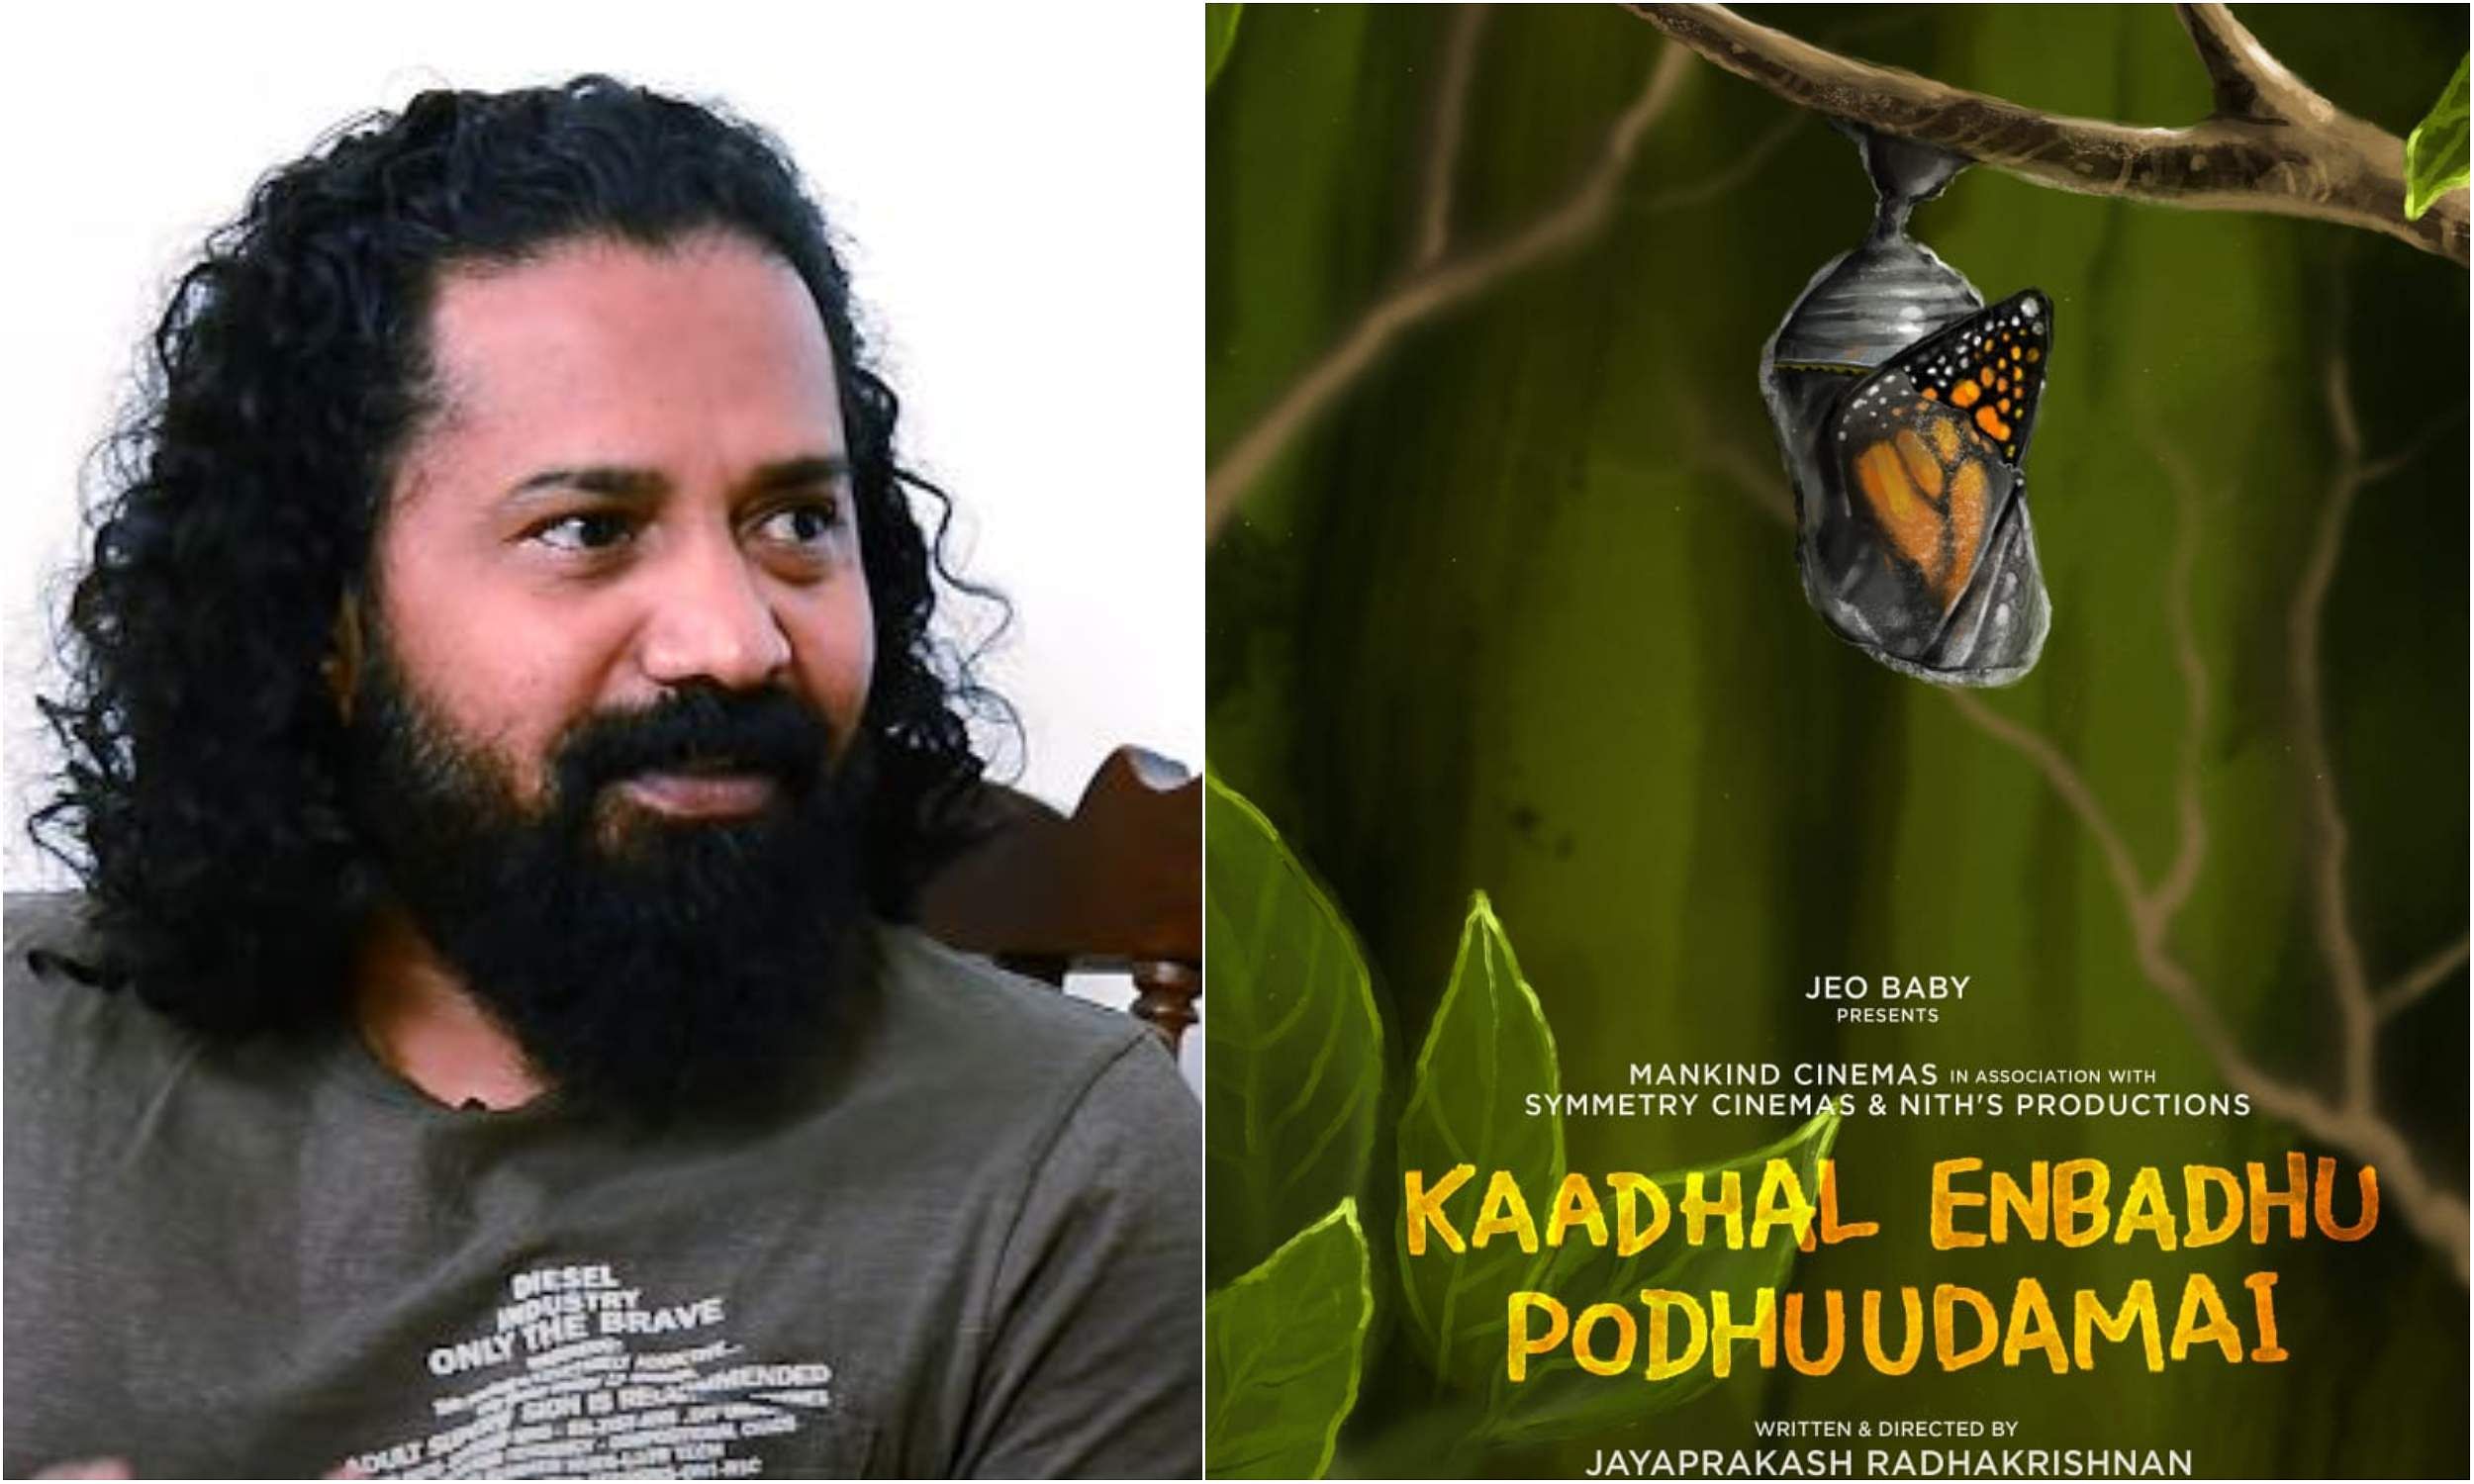 Jayaprakash Radhakrishnan's next titled Kaadhal Enbadhu Podhuudamai